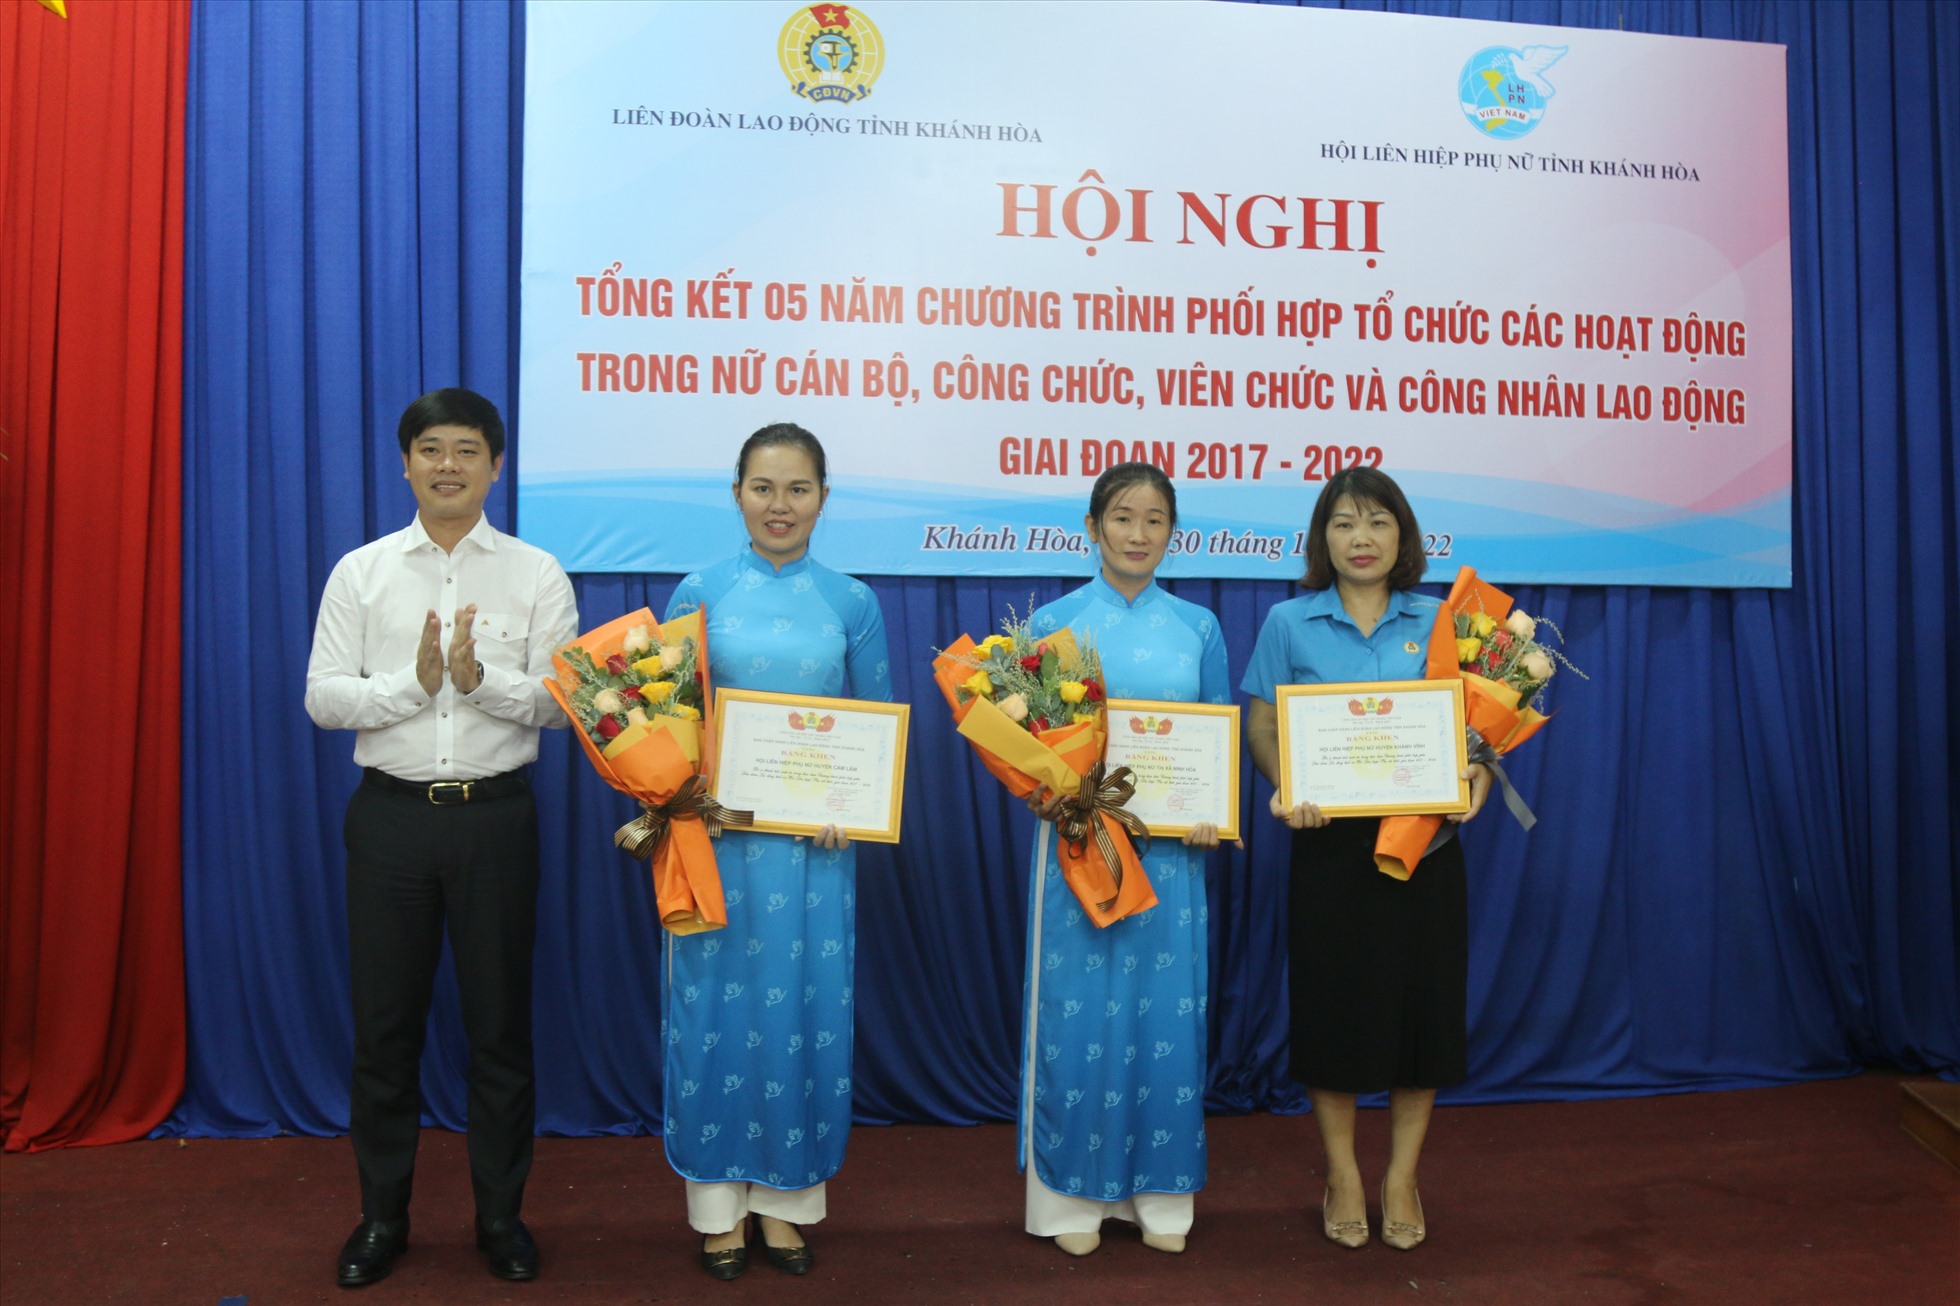 Ông Bùi Hoài Nam- Chủ tịch LĐLĐ Khánh Hòa trao bằng khen cho 3 cá nhân có thành tích xuất sắc trong thực hiện chương trình phối hợp giai đoạn 2017-2022. Ảnh: P.Linh